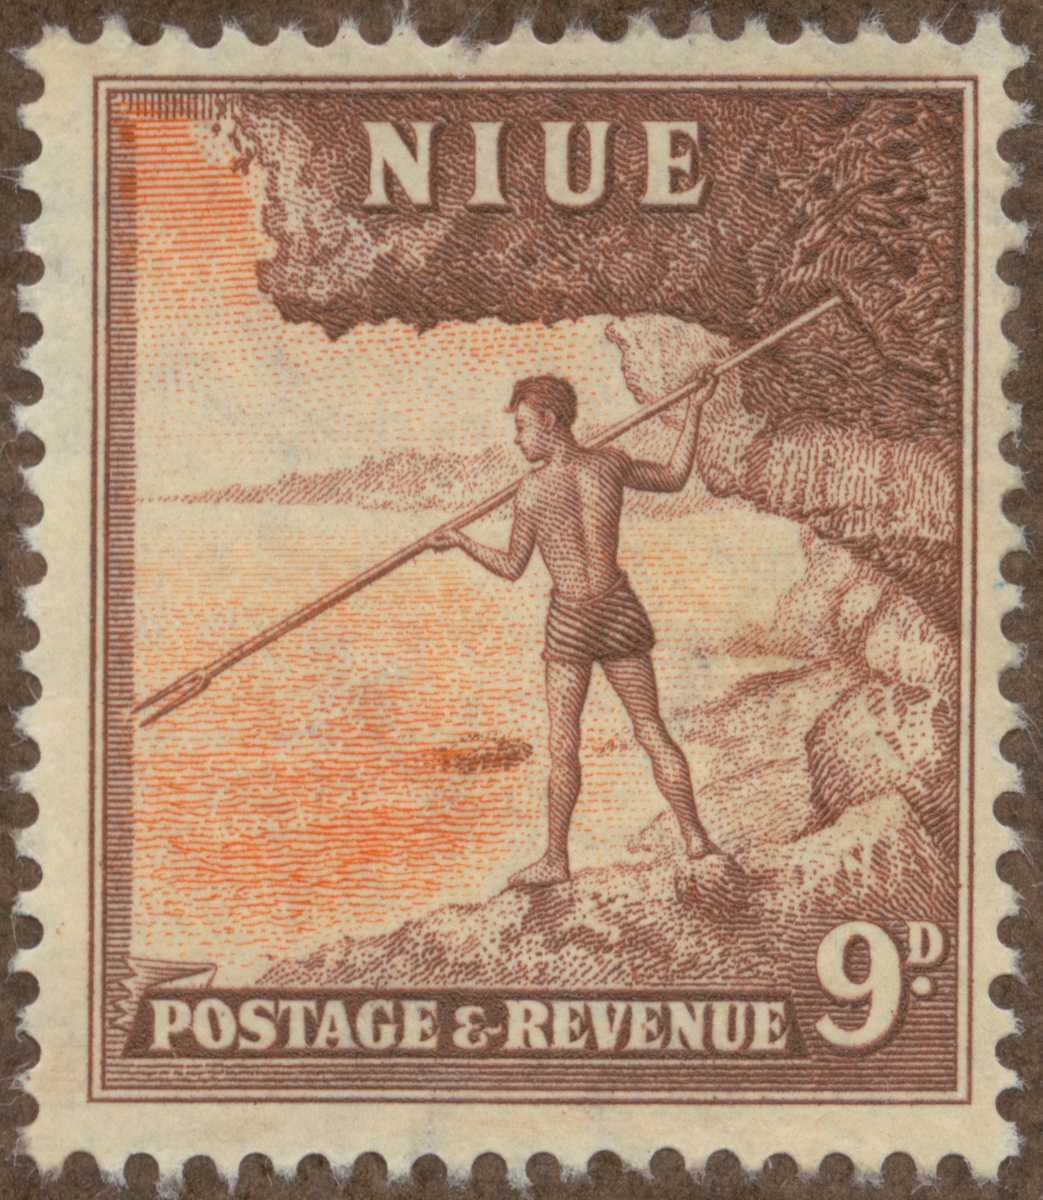 Frimärke ur Gösta Bodmans filatelistiska motivsamling, påbörjad 1950.
Frimärke från Niue, 1950. Motiv av Fiske med spjut